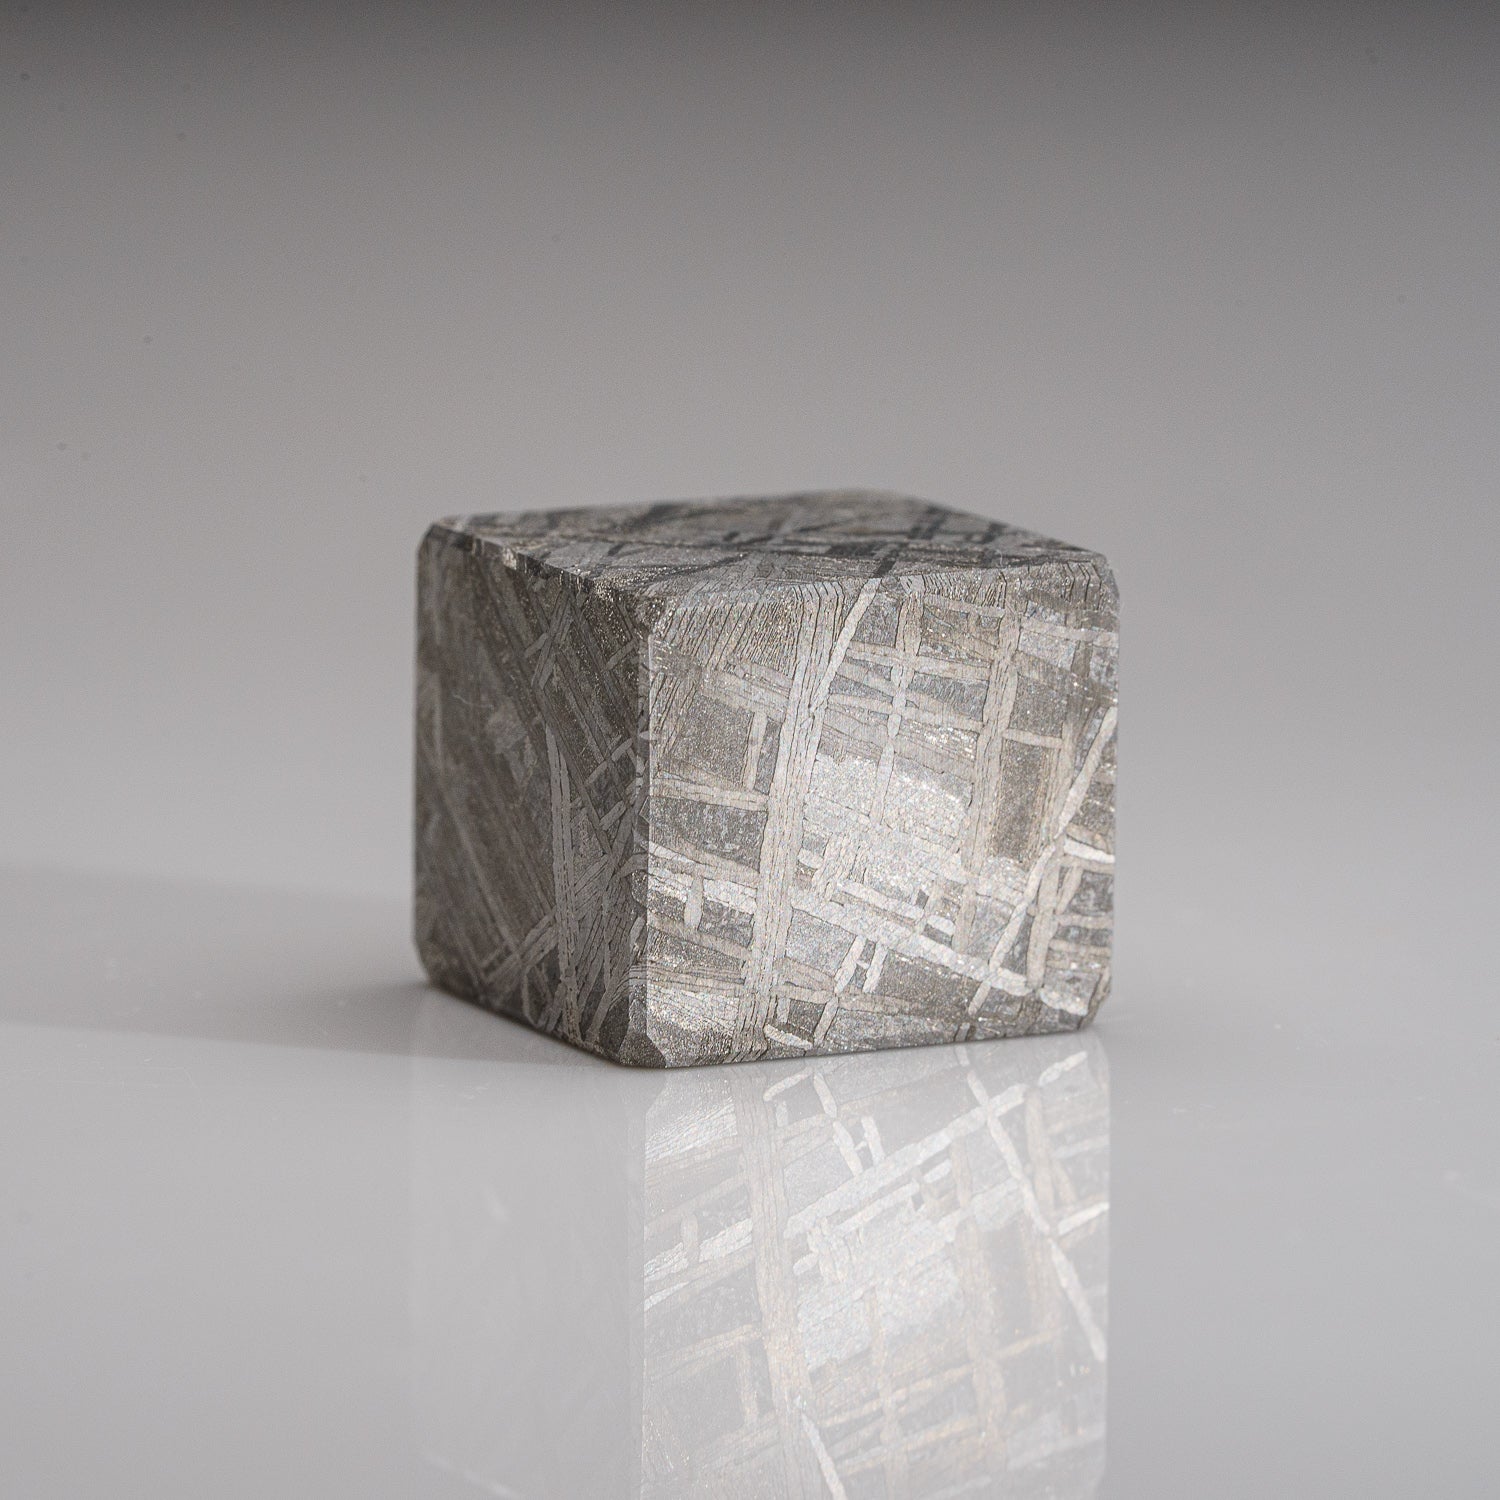 Genuine Muonionalusta Meteorite Cube (24 grams)